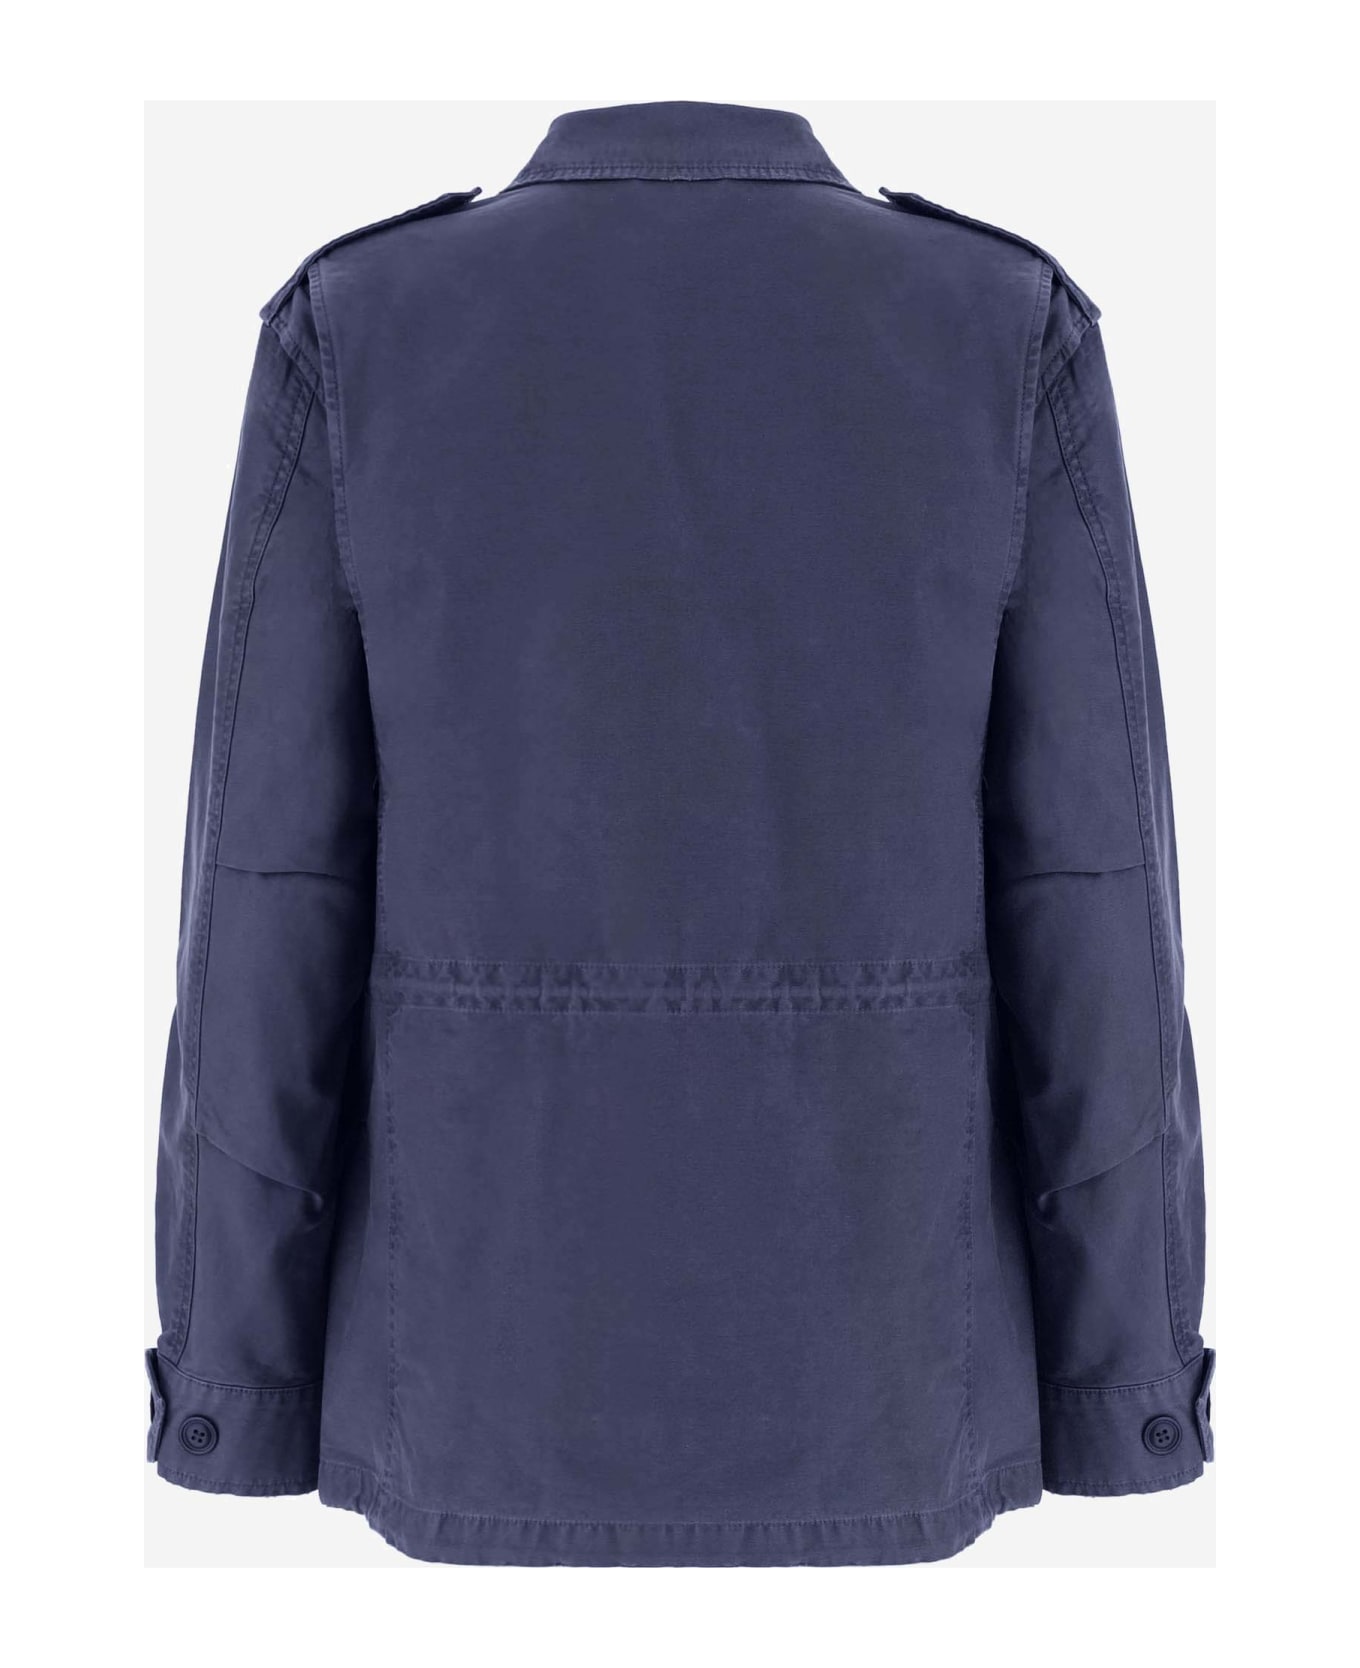 Polo Ralph Lauren Multi-pocket Cotton Jacket - Blue